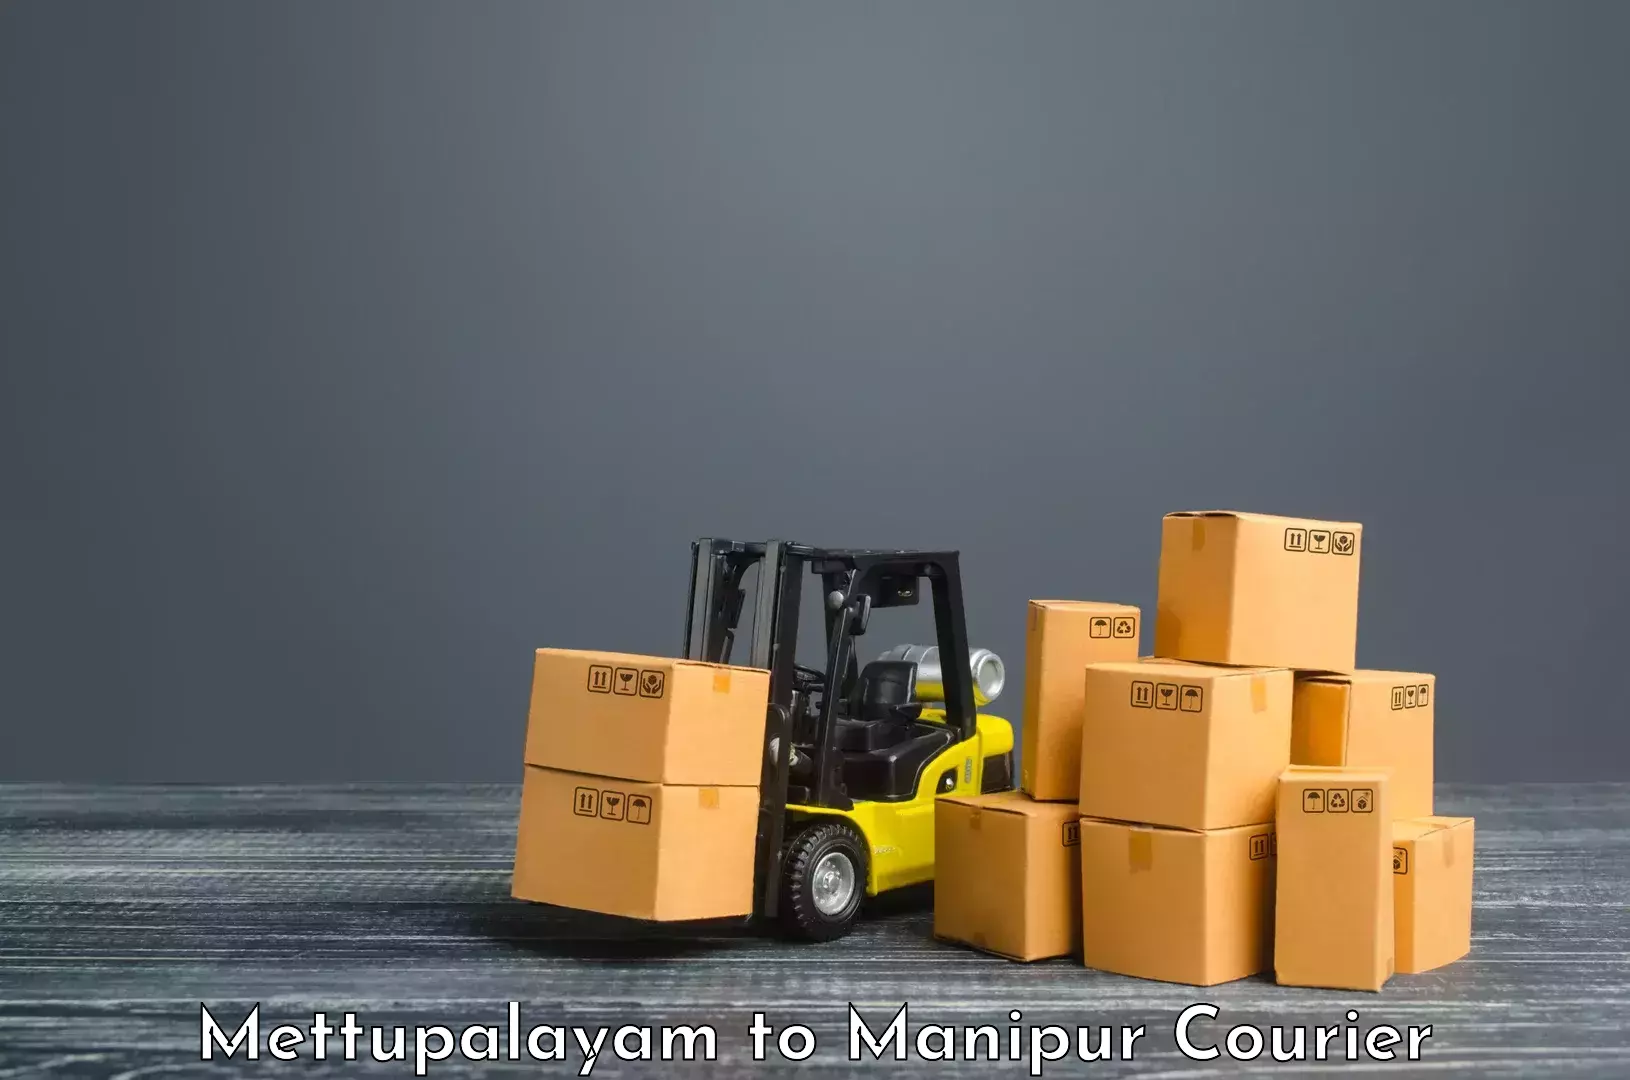 Global logistics network Mettupalayam to Manipur